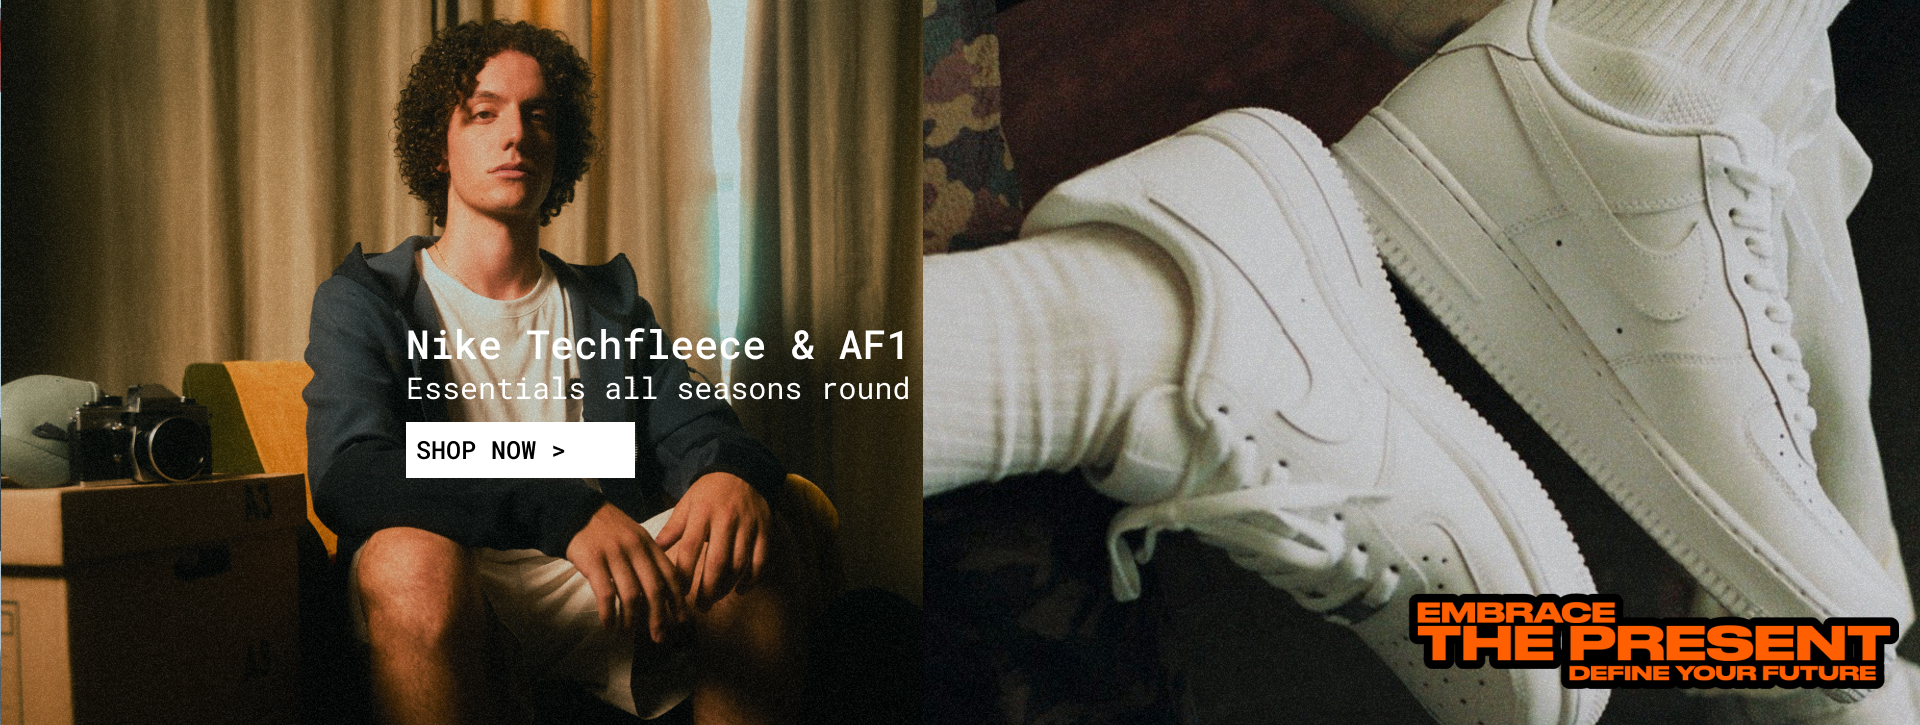 Nike Techfleece & AF1